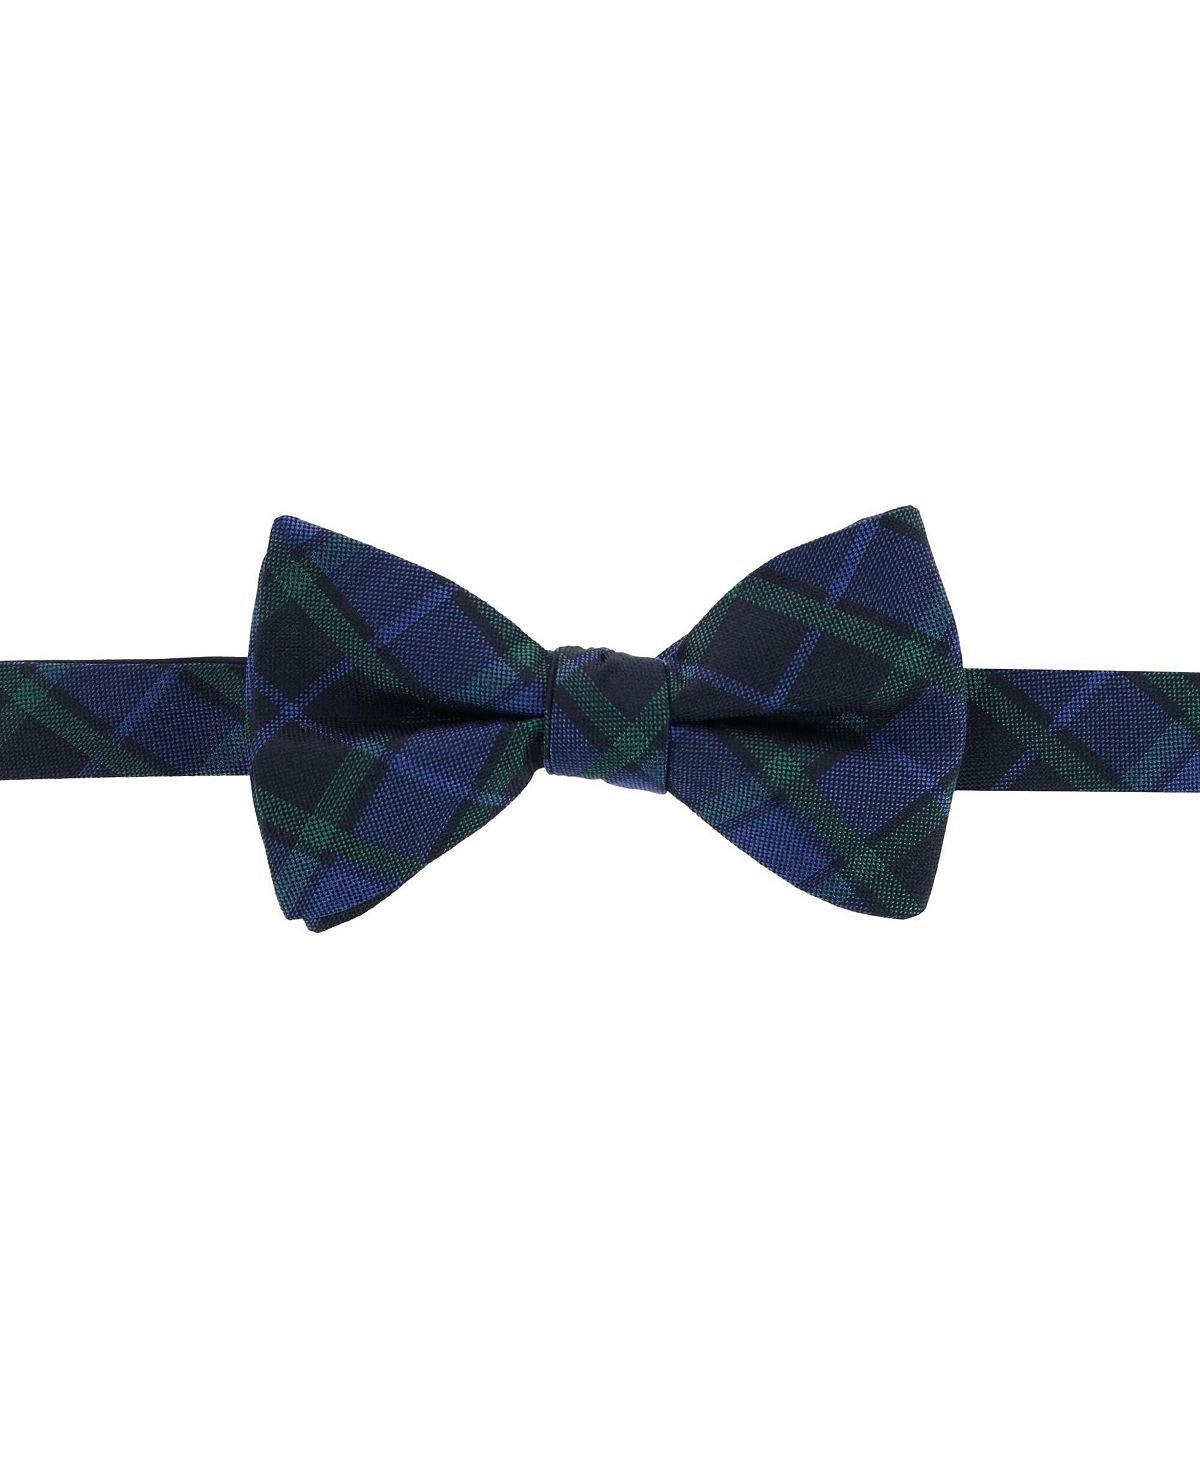 Зелено-темно-синий шелковый галстук-бабочка в клетку Ives Blackwatch TRAFALGAR галстук в клетку для мальчиков синий